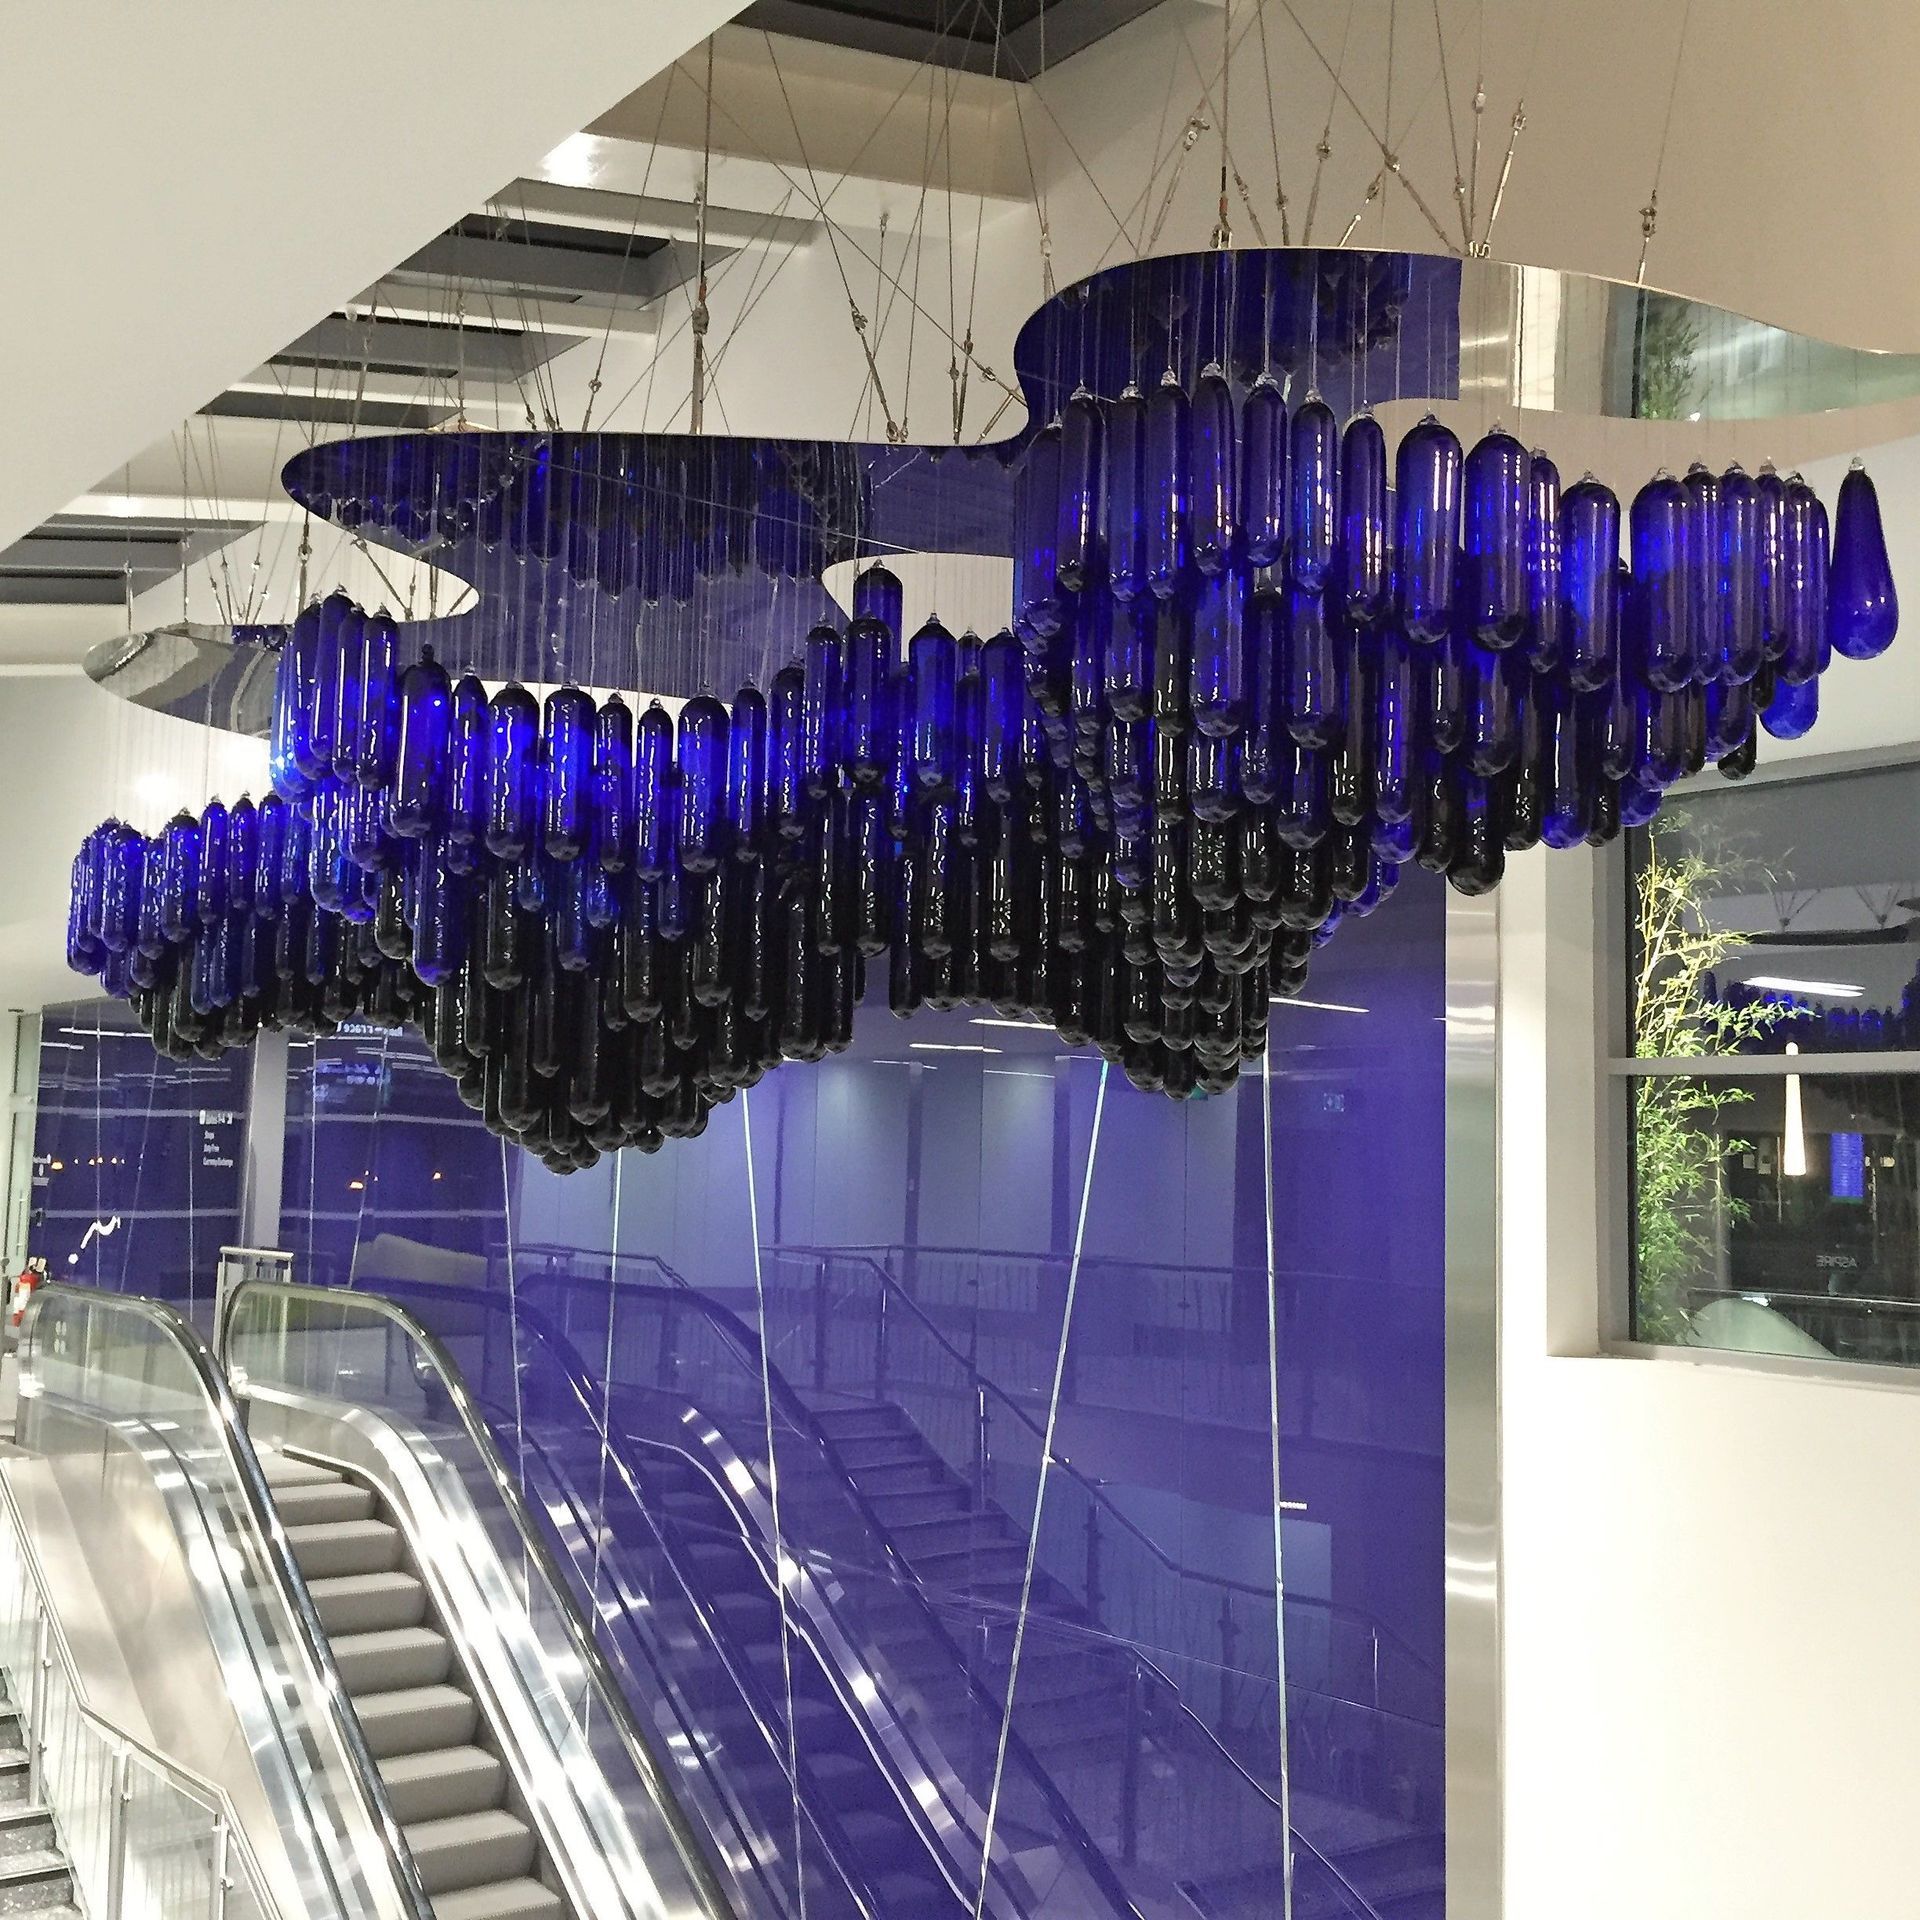 blown glass Bristol Blue chandelier from Roast Design installed at Bristol Airport